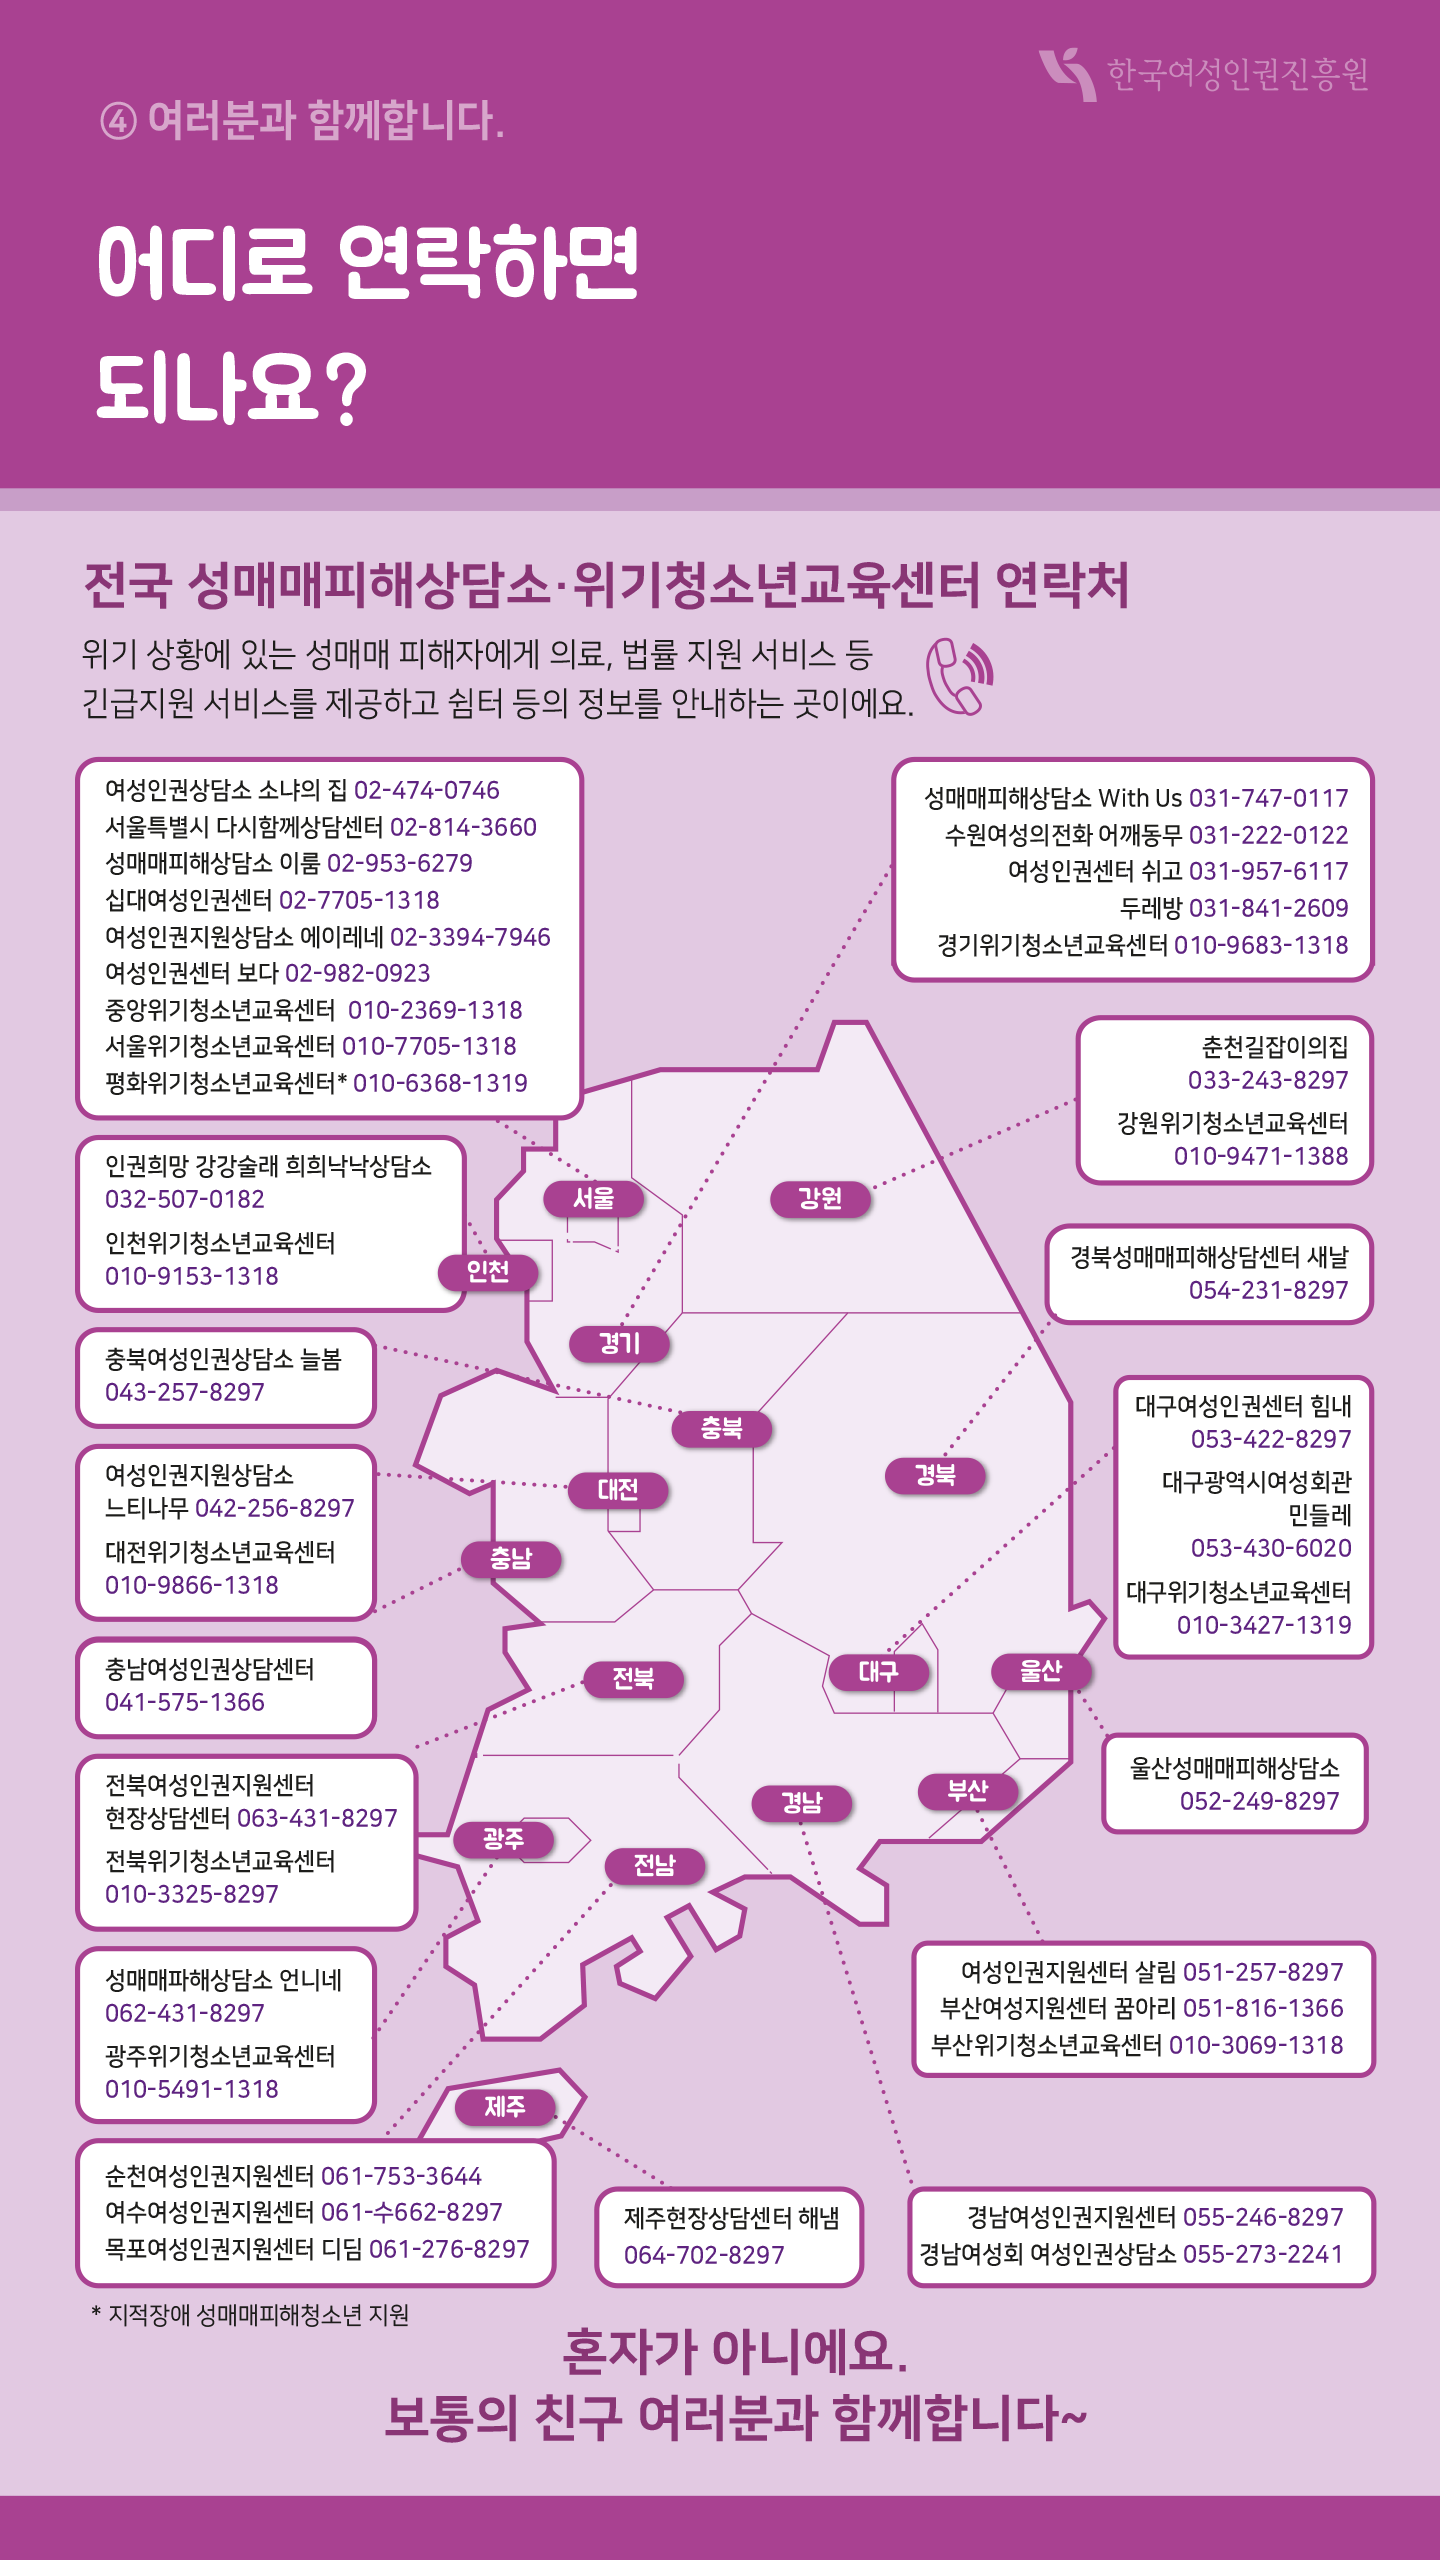 14장 여러분과 함께합니다. 어디로 연락하면 되나요? 전국 성매매피해상담소·위기청소년교육센터 연락처 위기 상황에 있는 성매매 피해자에게 의료, 법률 지원 서비스 등 긴급지원 서비스를 제공하고 쉼터 등의 정보를 안내하는 곳이에요. 서울 여성인권상담소 소나의 집 02-474-0746 서울특별시 다시함께상담센터 02-814-3660 성매매피해상담소 이룸 02-953-6279 십대여성인권센터 02-7705-1318 여성인권지원상담소 에이레네 02-3394-7946 여성인권센터 보다 02-982-0923 중앙위기청소년교육센터 010-2369-1318 서울위기청소년교육센터 010-7705-1318 평화위기청소년교육센터 010-6368-1319 인천 인권희망 강강술래 희희낙낙상담소 032-507-0182 인천위기청소년교육센터 010-9153-1318 충북 충북여성인권상담소 늘봄 043-257-8297 대전 여성인권지원상담소 느티나무 042-256-8297 대전위기청소년교육센터 010-9866-1318 충남 충남여성인권상담센터 041-575-1366 전북 전북여성인권지원센터 현장상담센터 063-431-8297 전북위기청소년교육센터 010-3325-8297 광주 성매매피해상담소 언니네 062-431-8297 광주위기청소년교육센터 010-5491-1318 전남 순천여성인권지원센터 061-753-3644 여수여성인권지원센터 061-수662-8297 제주 제주현장상담센터 해냄 064-702-8297 경기 성매매피해상담소 With Us 031-747-0117 수원여성의전화 어깨동무 031-222-0122 여성인권센터 쉬고 031-957-6117 두레방 031-841-2609 경기위기청소년교육센터 010-9653-1318 강원 춘천길잡이의집 033-243-8297 강원위기청소년교육센터 010-9471-1388 경북 경북성매매피해상담센터 새날 054-231-8297 대구 대구여성인권센터 힘내 053-422-8297 대구광역시여성회관 민들레 053-430-6020 대구위기청소년교육센터 010-3427-1319 울산 울산성매매피해상담소 052-249-8297 부산 여성인권지원센터 살림 051-257-8297 부산여성지원센터 꿈아리 051-816-1366 부산위기청소년교육센터 010-3069-1318 경남 경남여성인권지원센터 055-246-8297 경남여성회 여성인권상담소 055-273-2241 지적장애 성매매피해청소년 지원 혼자가 아니에요. 보통의 친구 여러분과 함께합니다~